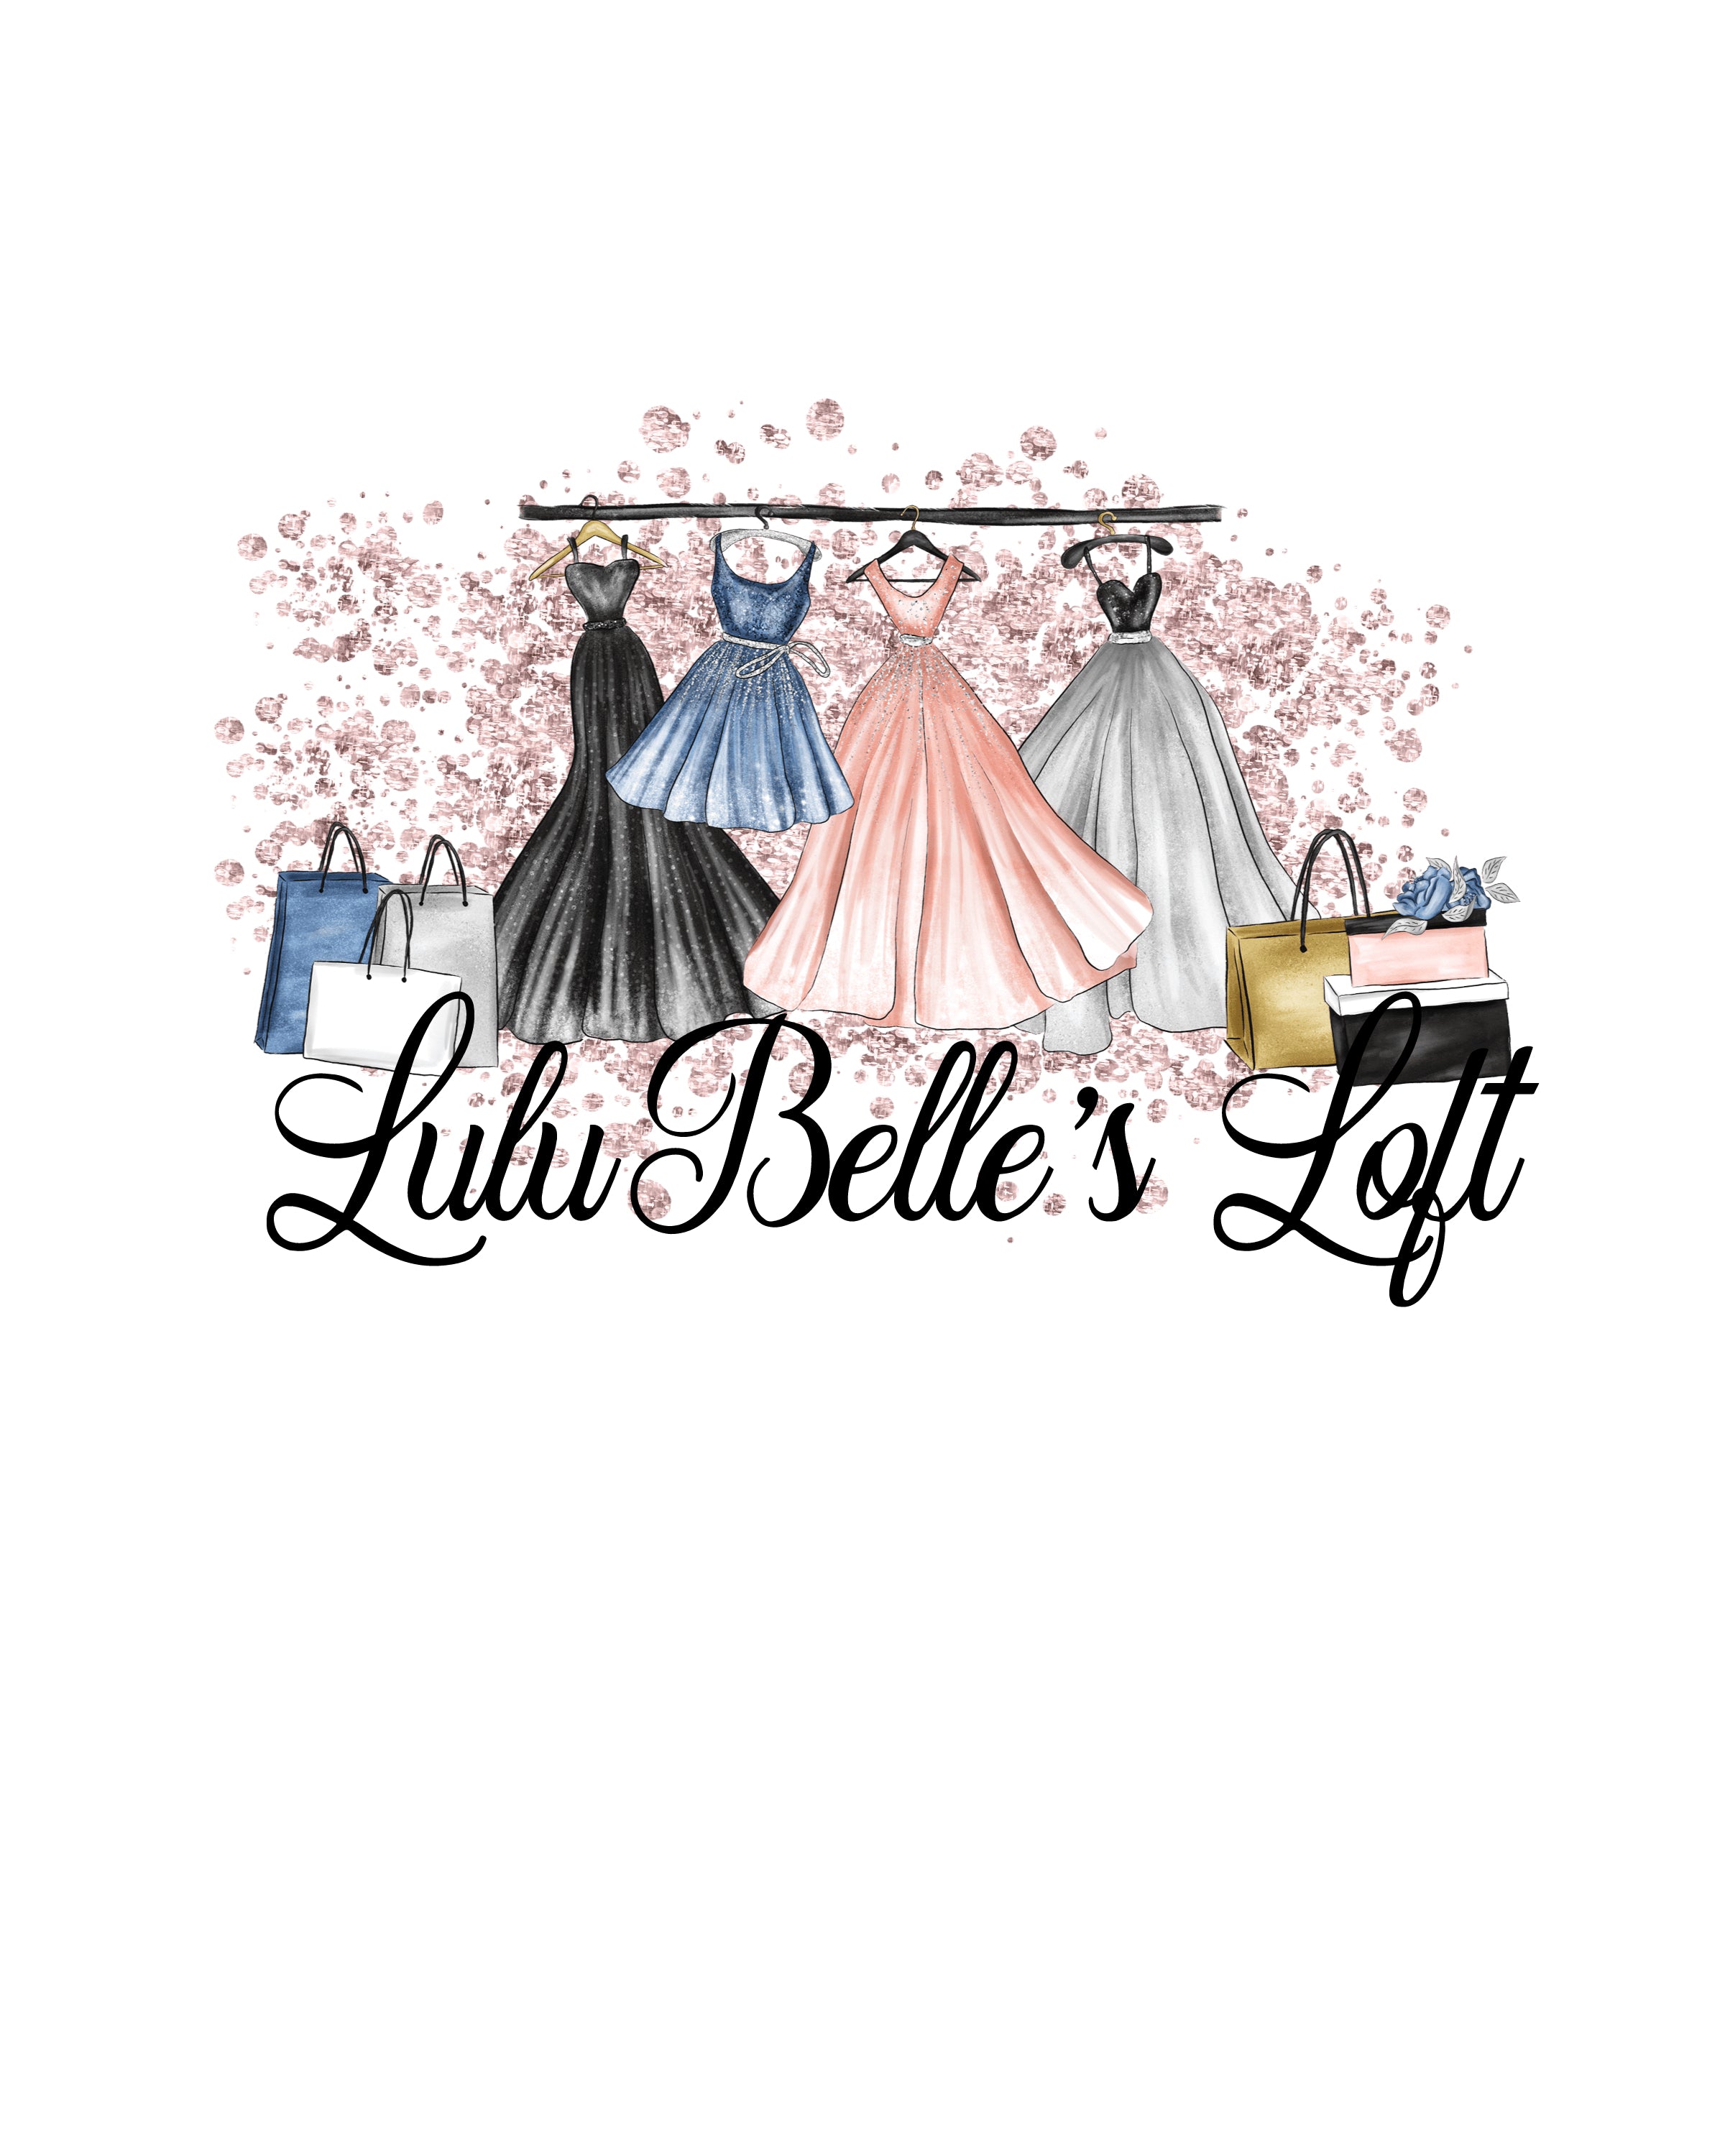 Lulubelles Boutique